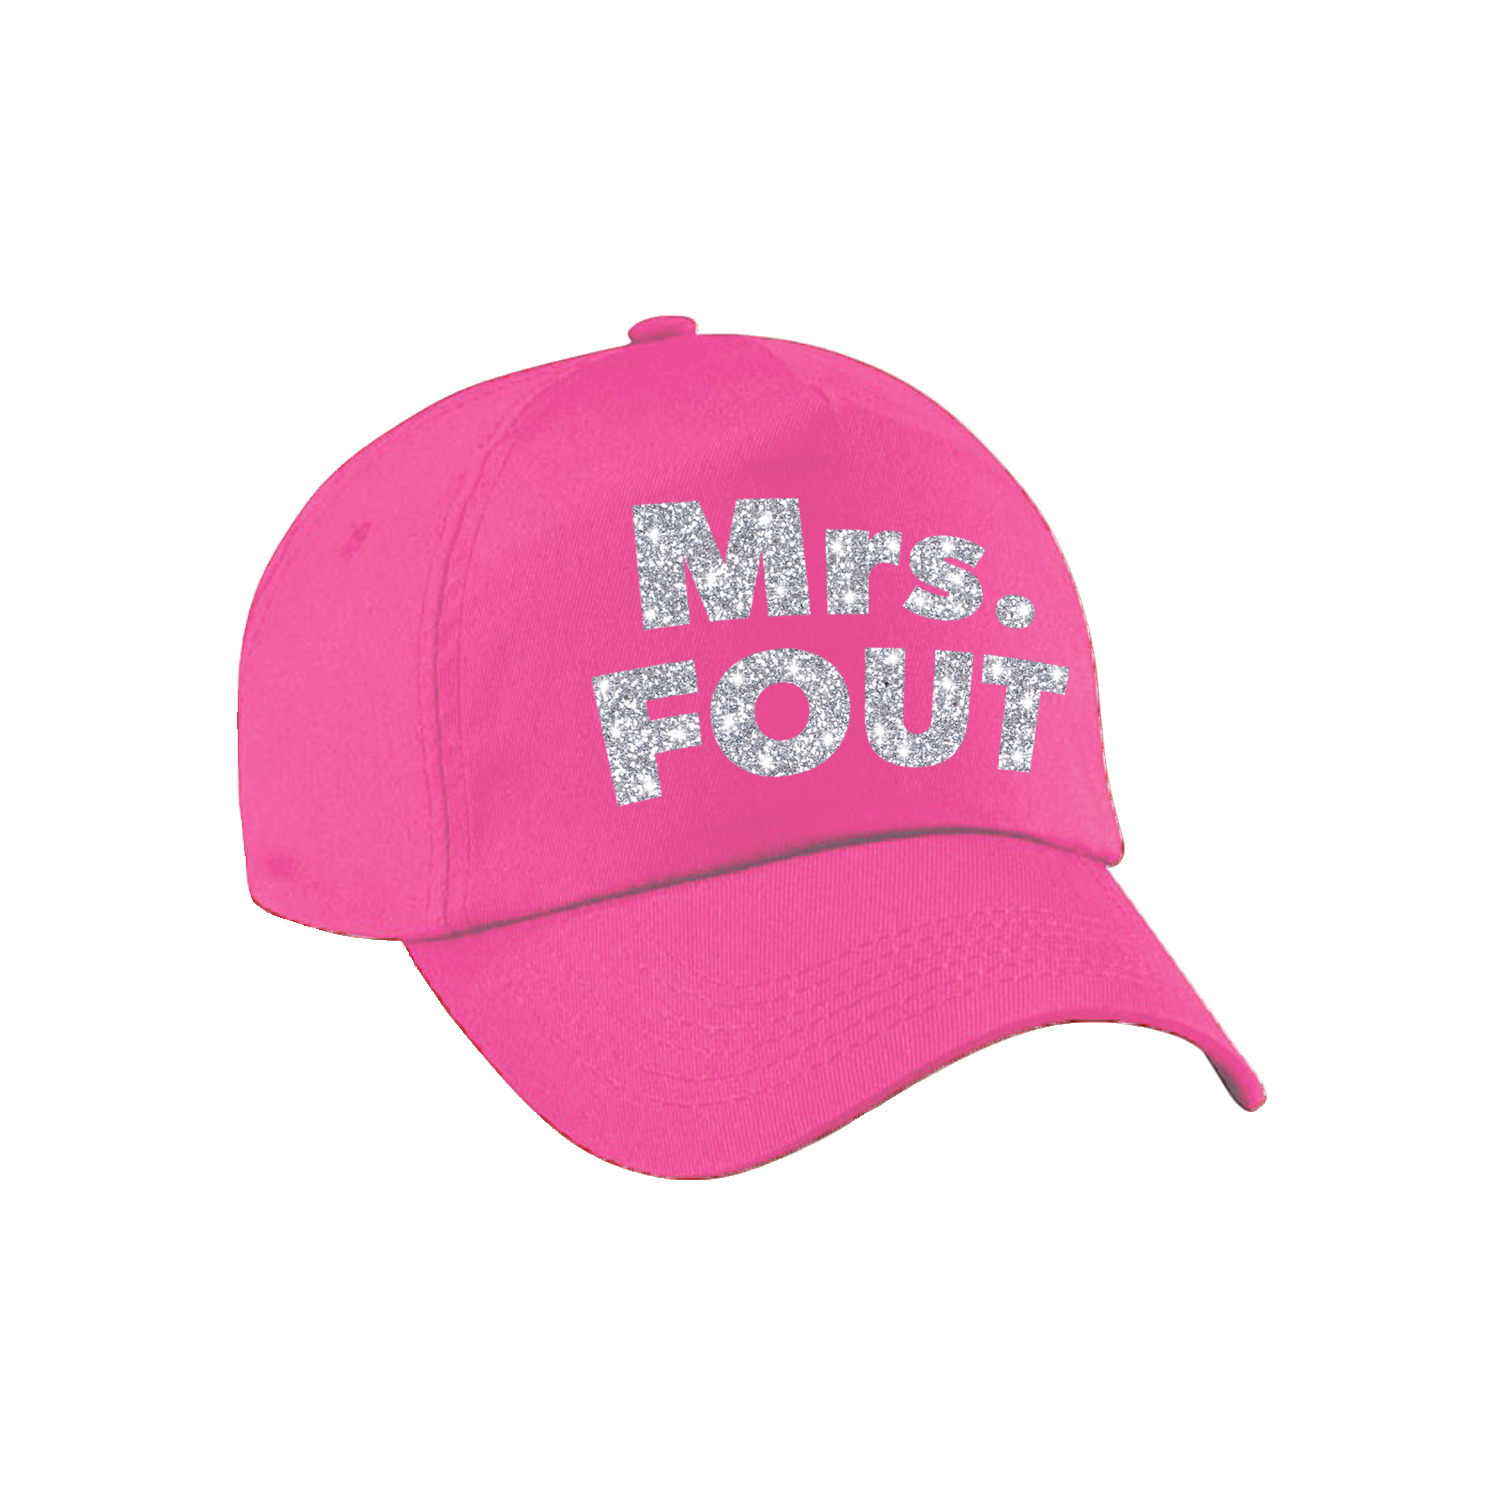 Mrs. FOUT pet -cap roze met zilver bedrukking dames